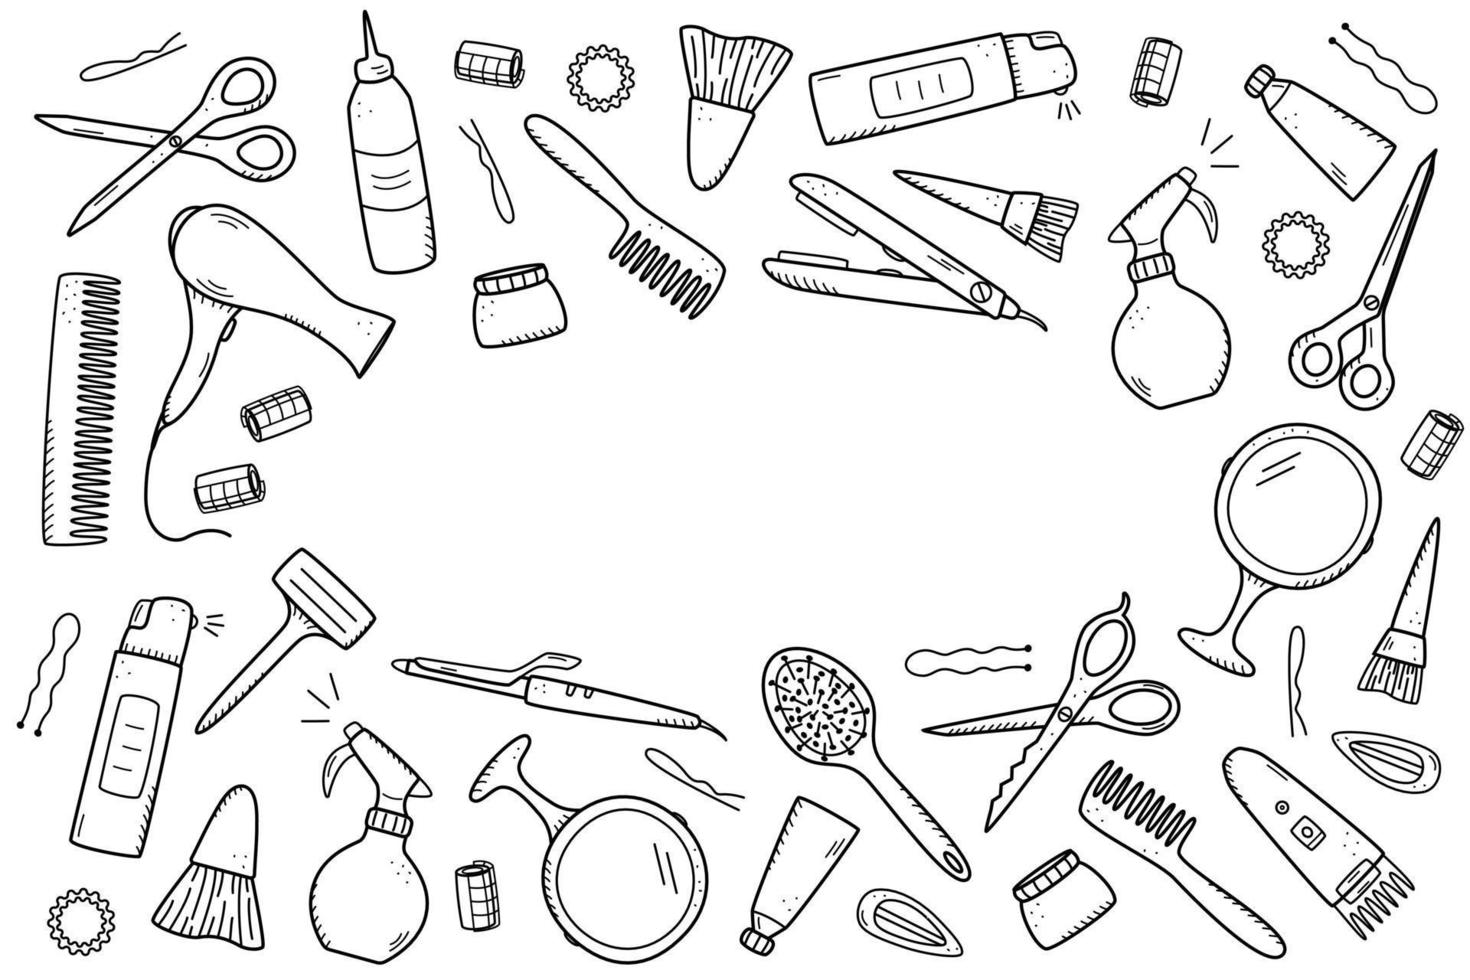 kit di strumenti per parrucchieri per salone di bellezza o uso domestico. illustrazione vettoriale di icone doodle per la cura di sé e dei capelli. pettine, rasoio, asciugacapelli, ferro arricciacapelli e altri oggetti